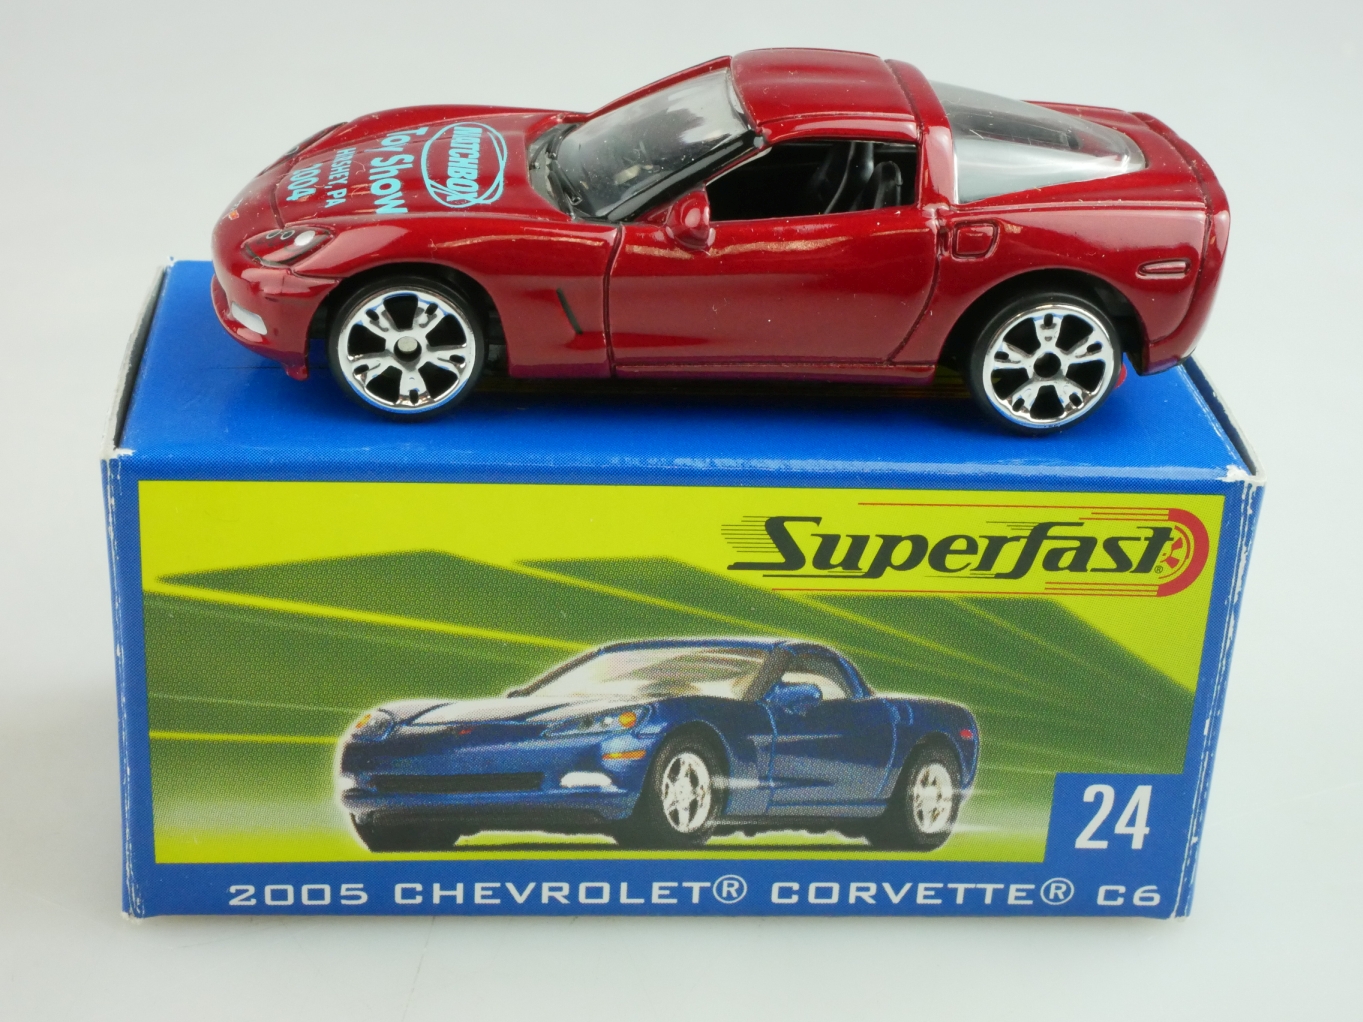 24 2005 Chevrolet Corvette C6 - 10479